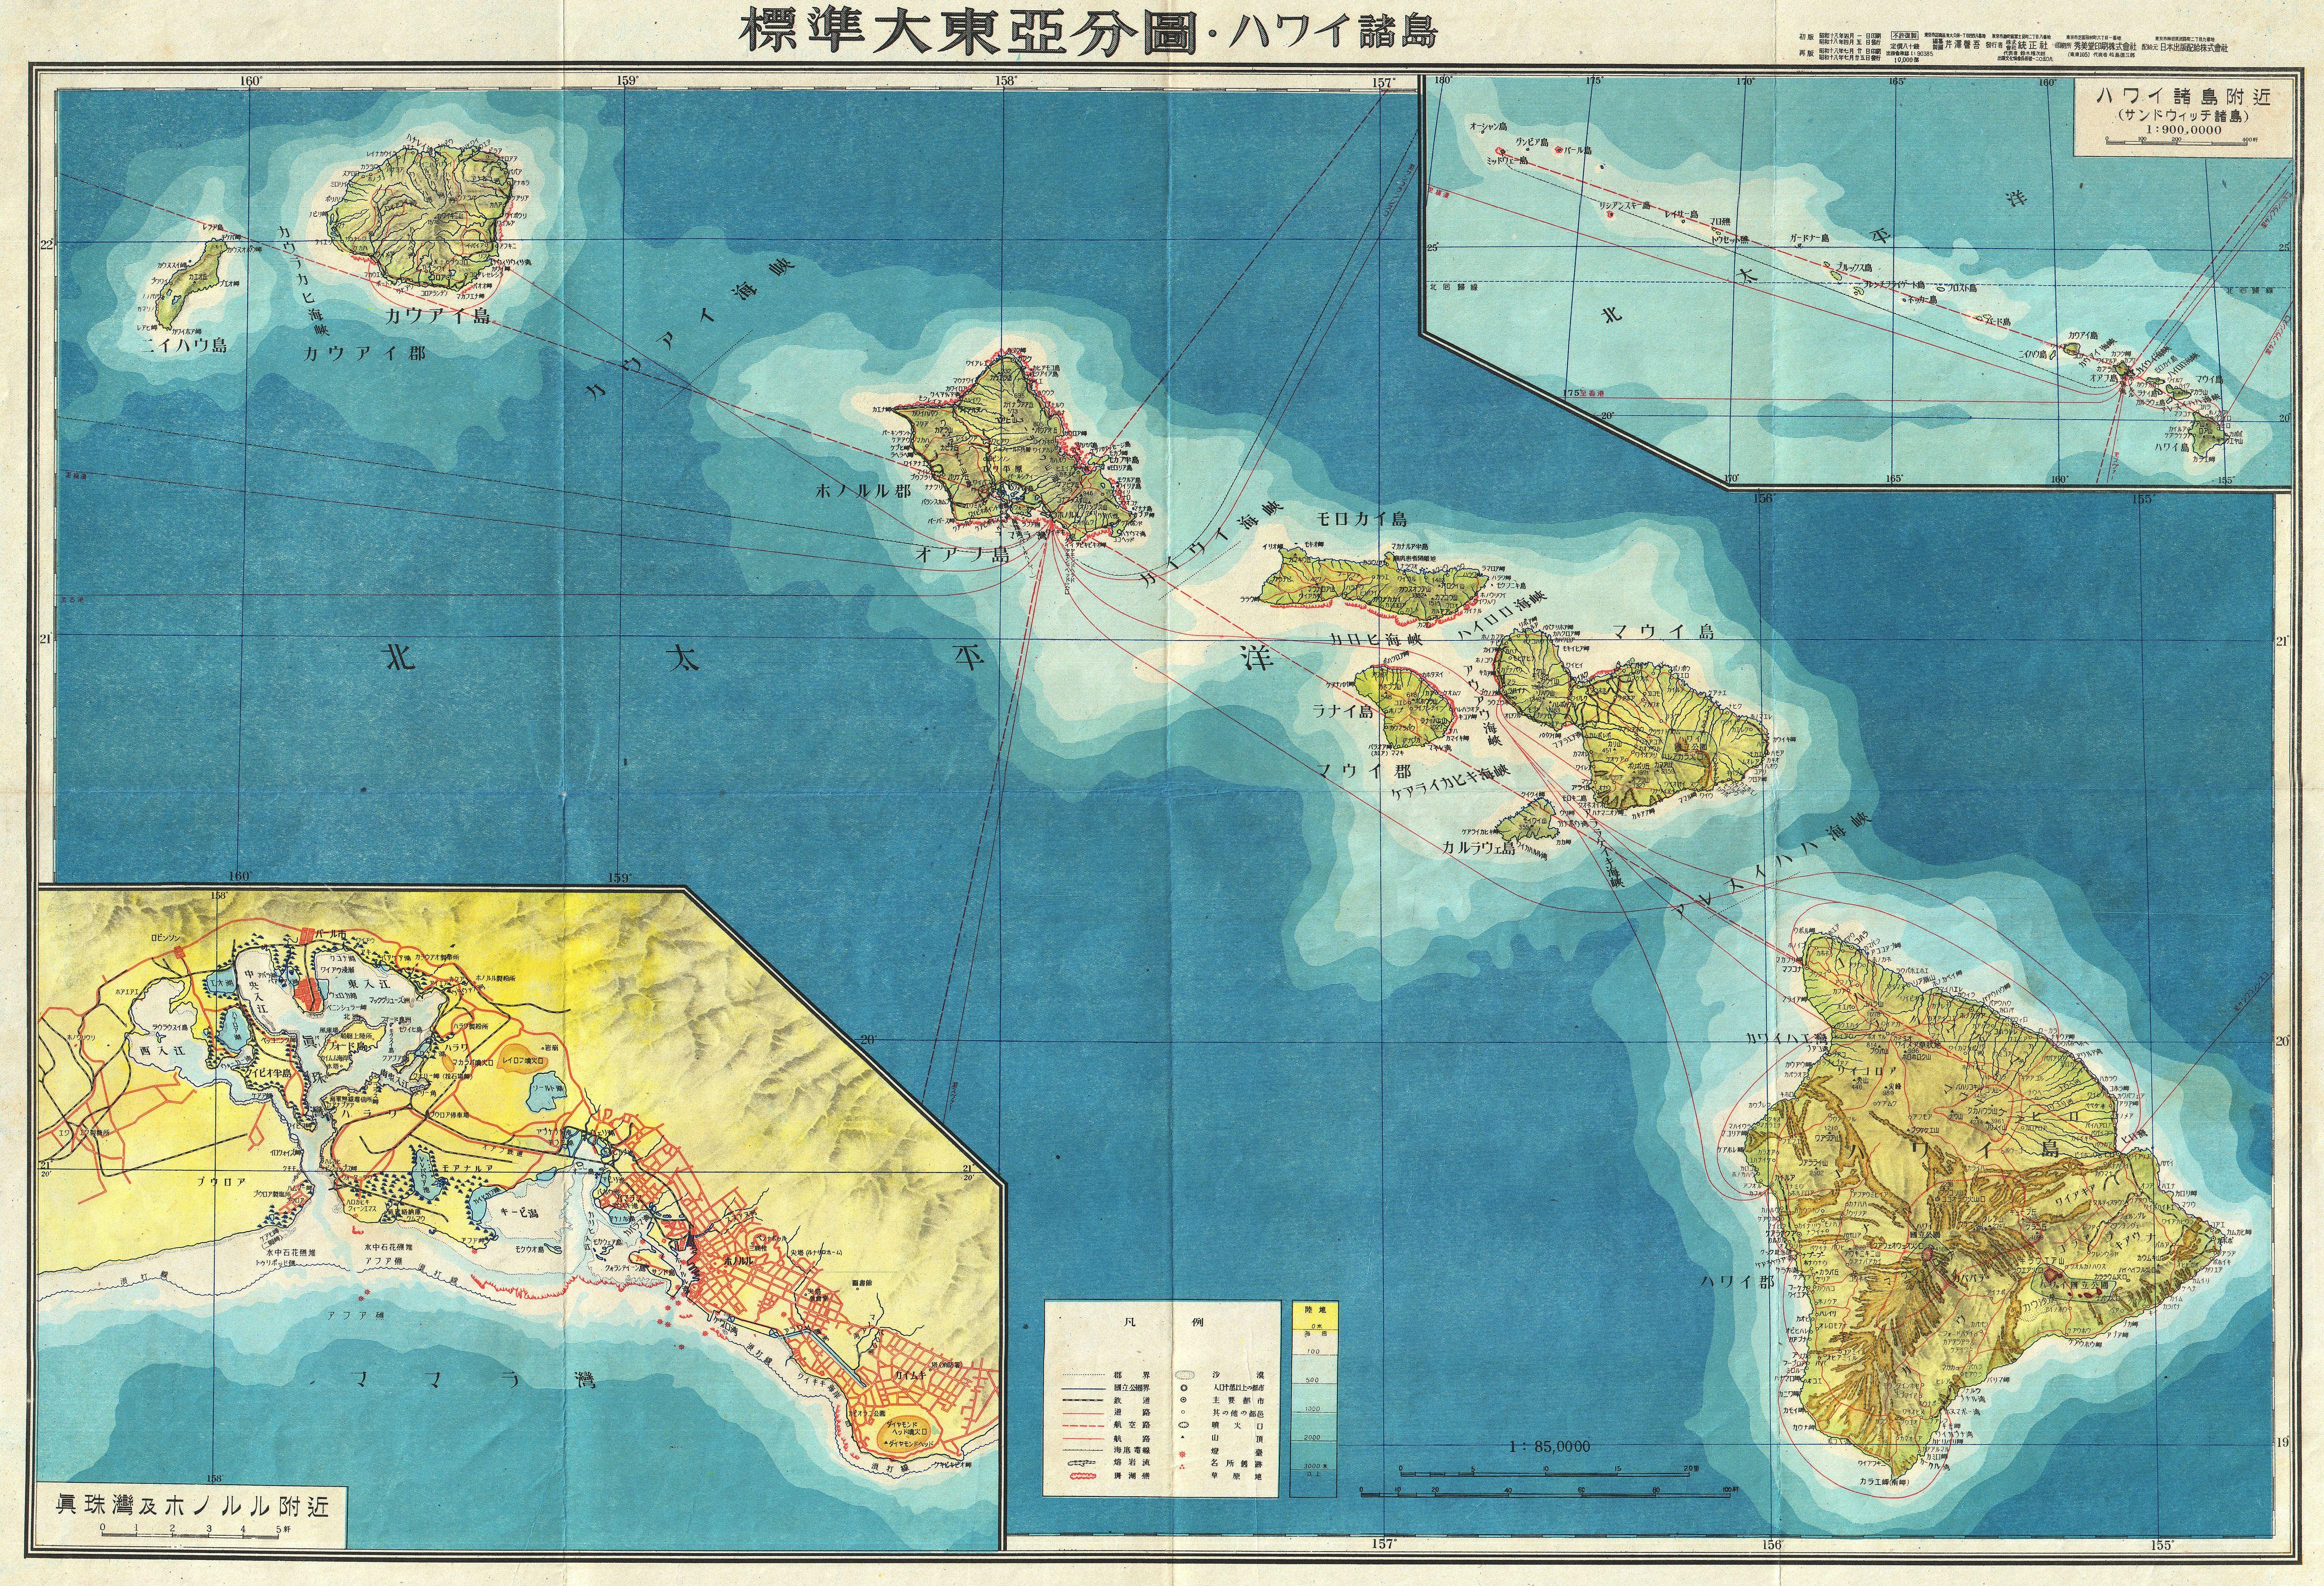 File1943 Japanese World War II Aeronautical Map of Hawaii (text in